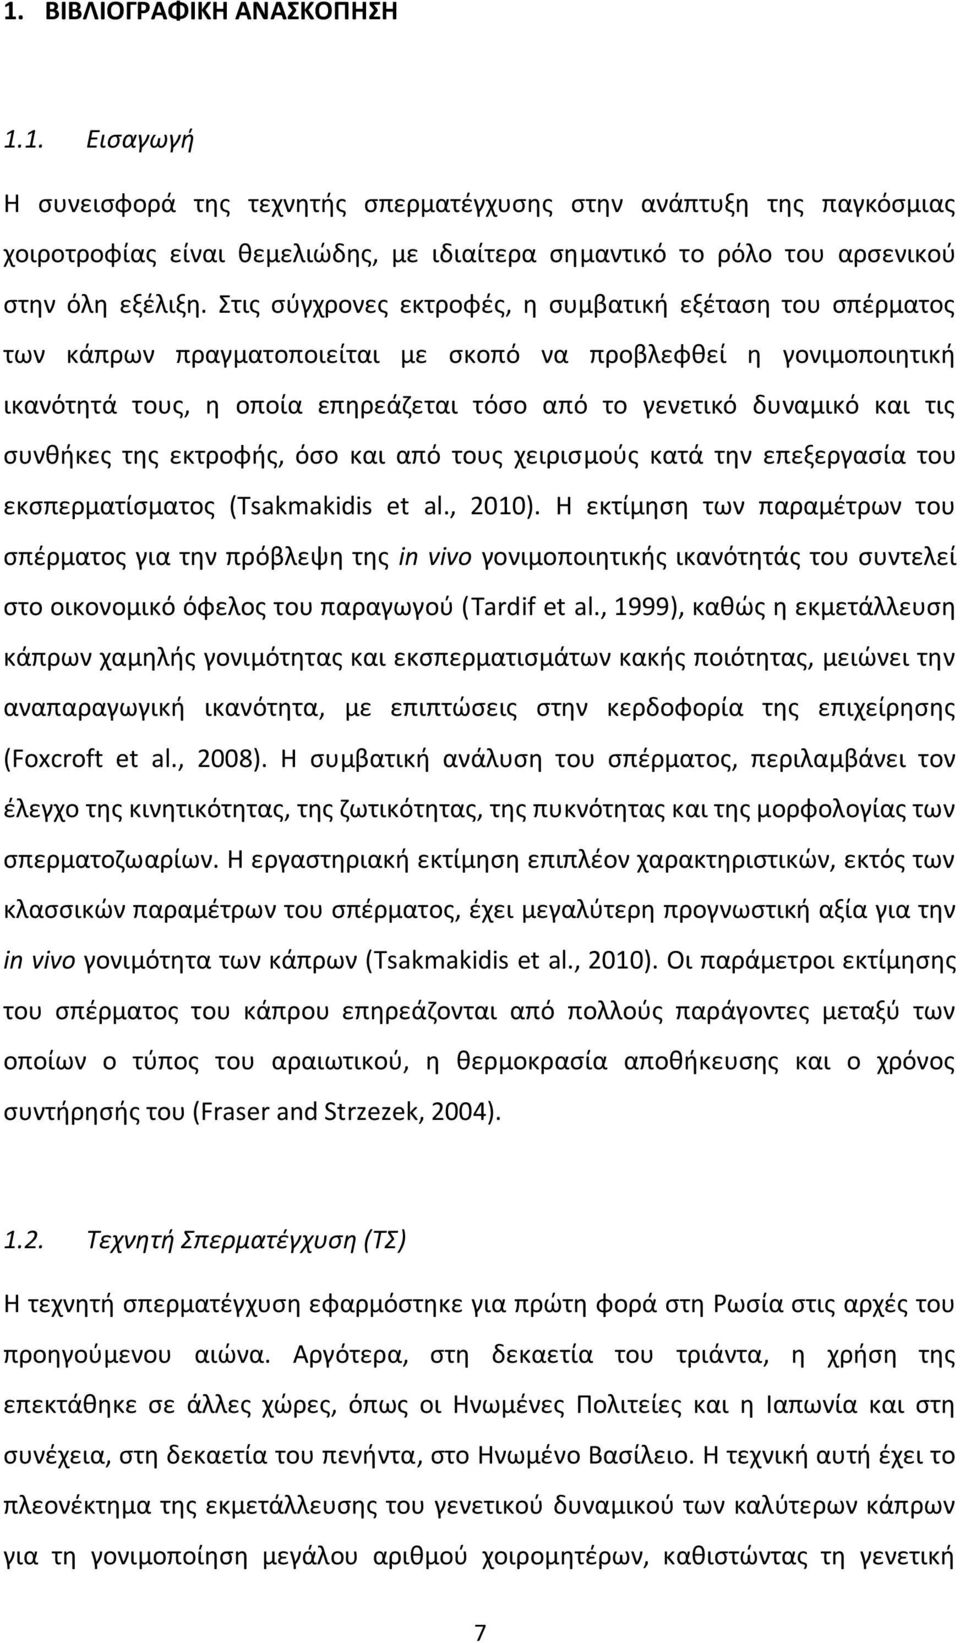 τις συνθήκες της εκτροφής, όσο και από τους χειρισμούς κατά την επεξεργασία του εκσπερματίσματος (Tsakmakidis et al., 2010).